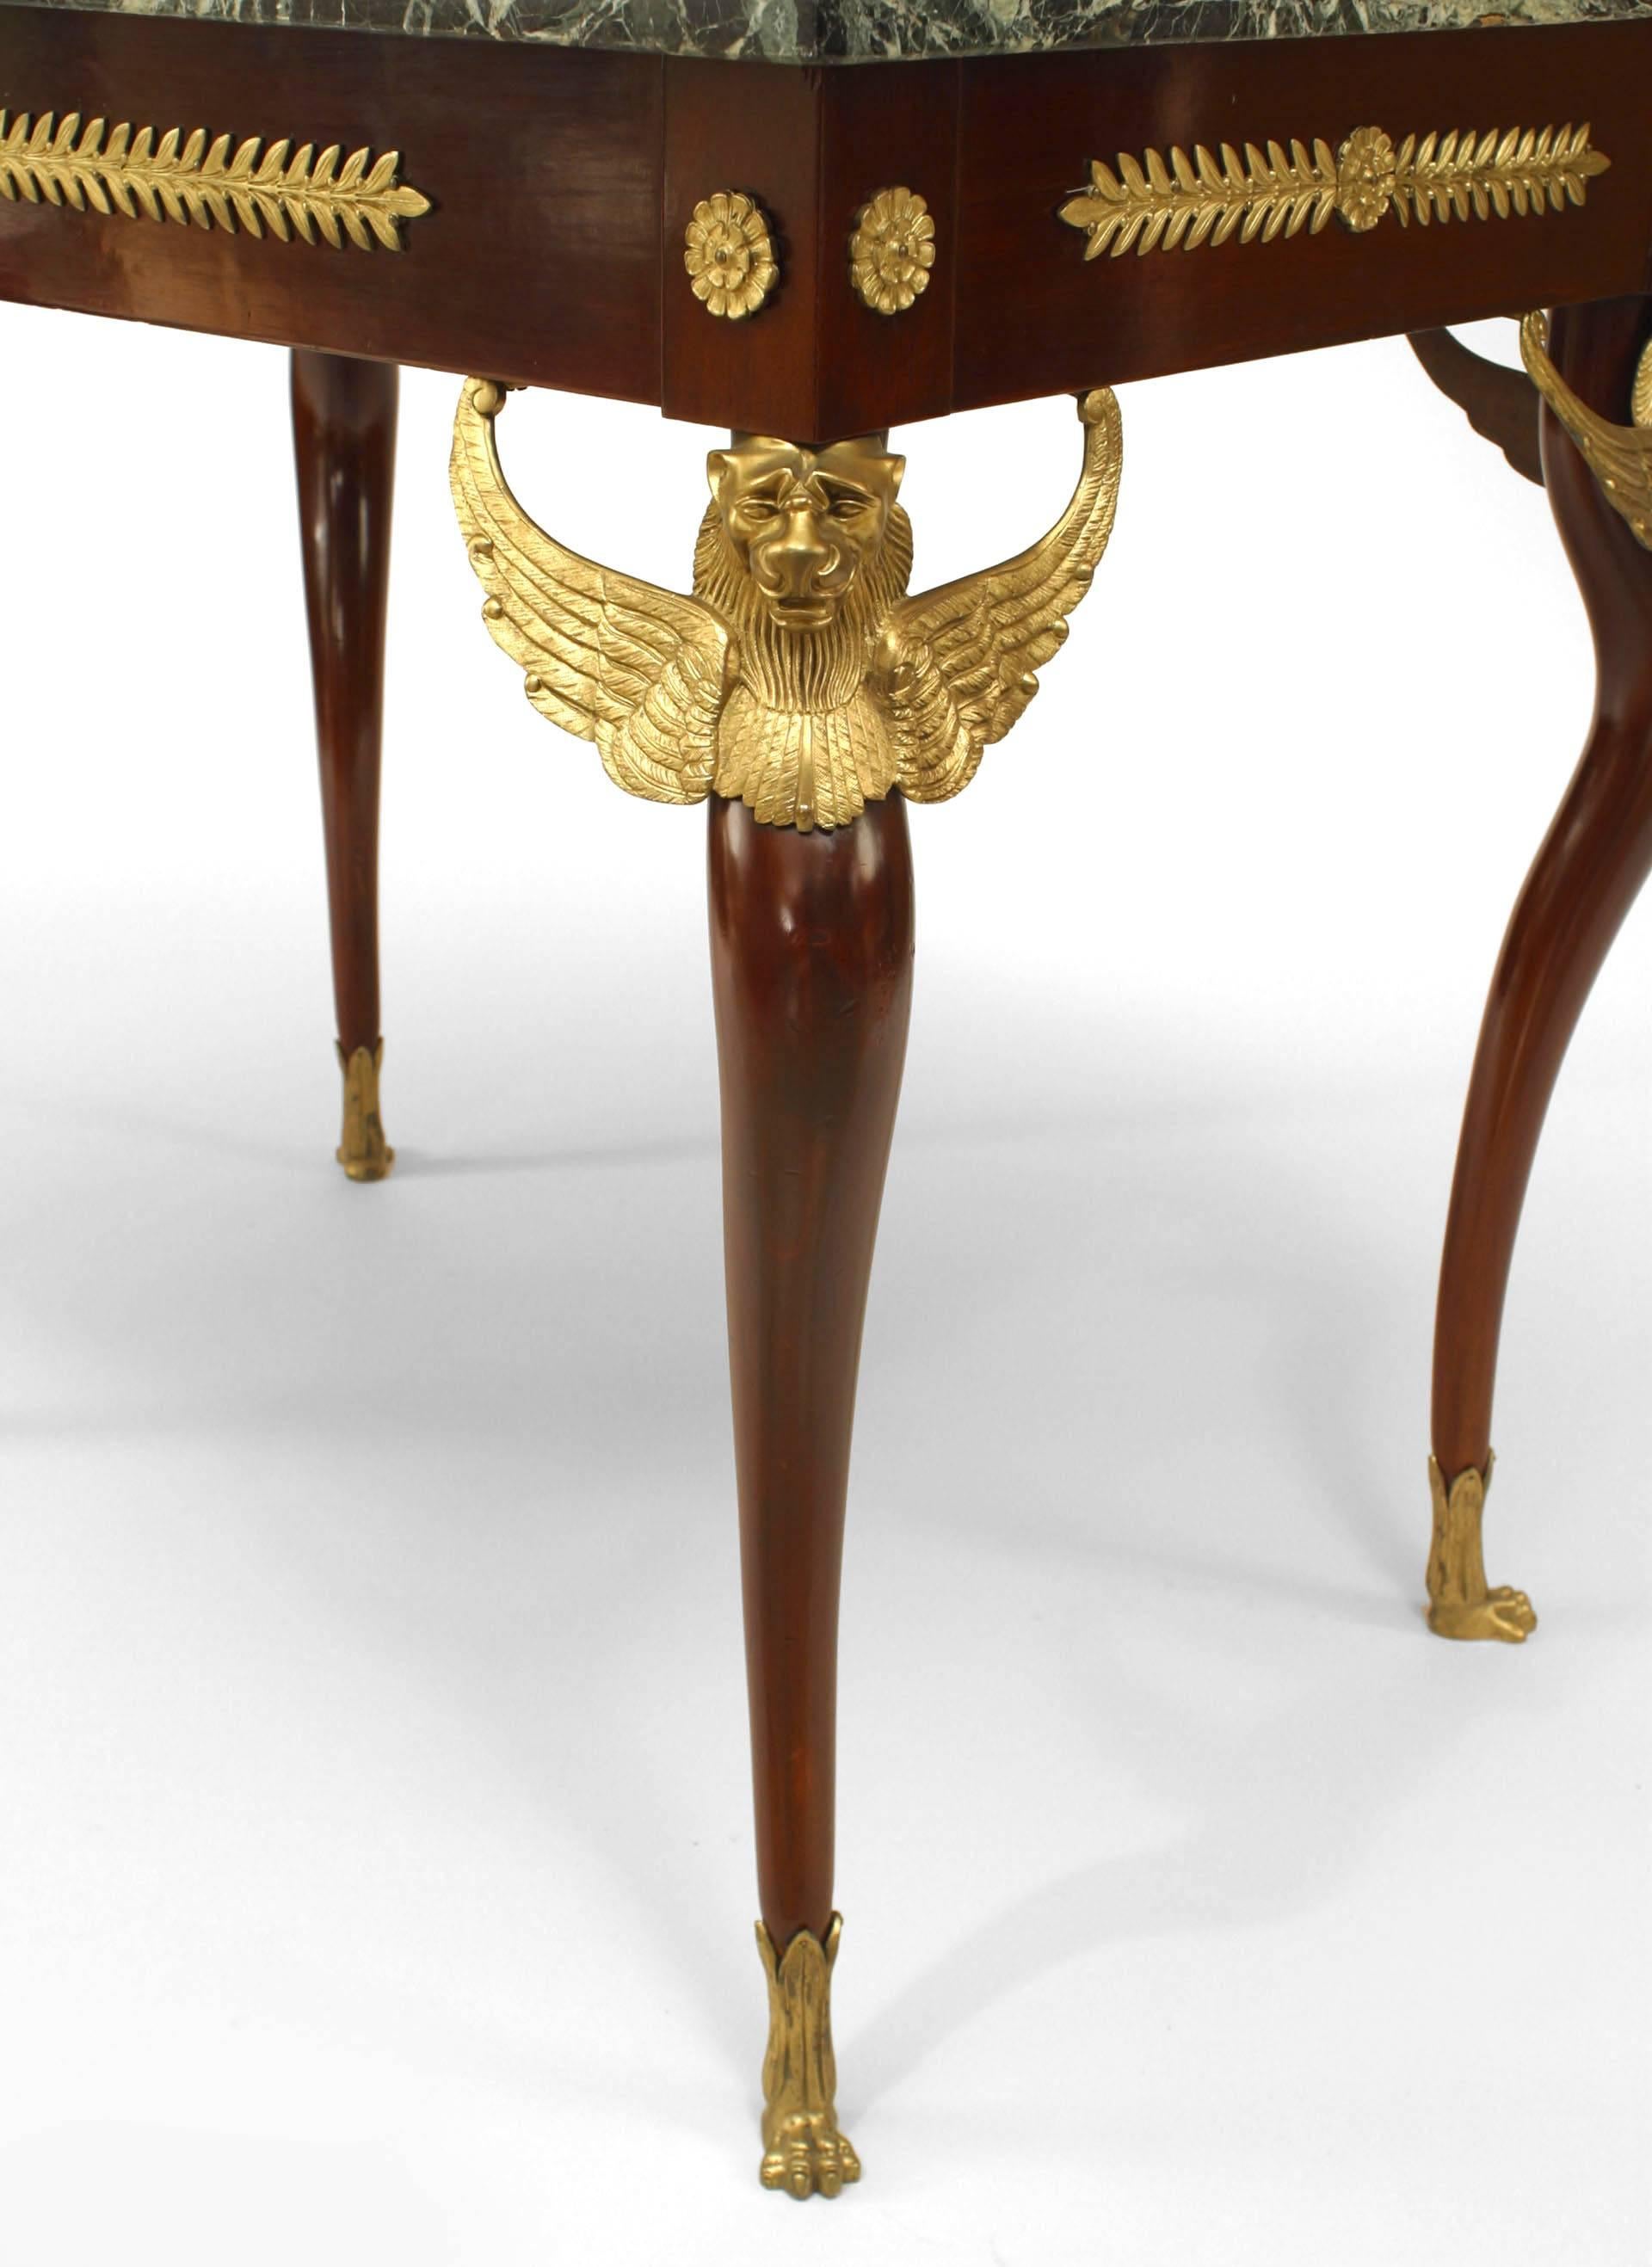 Französischer Empire-Tisch (19. Jh.) aus Mahagoni mit Bronzeverzierung und geflügelten Greifen auf Beinen mit einer grünen rechteckigen Marmorplatte.
